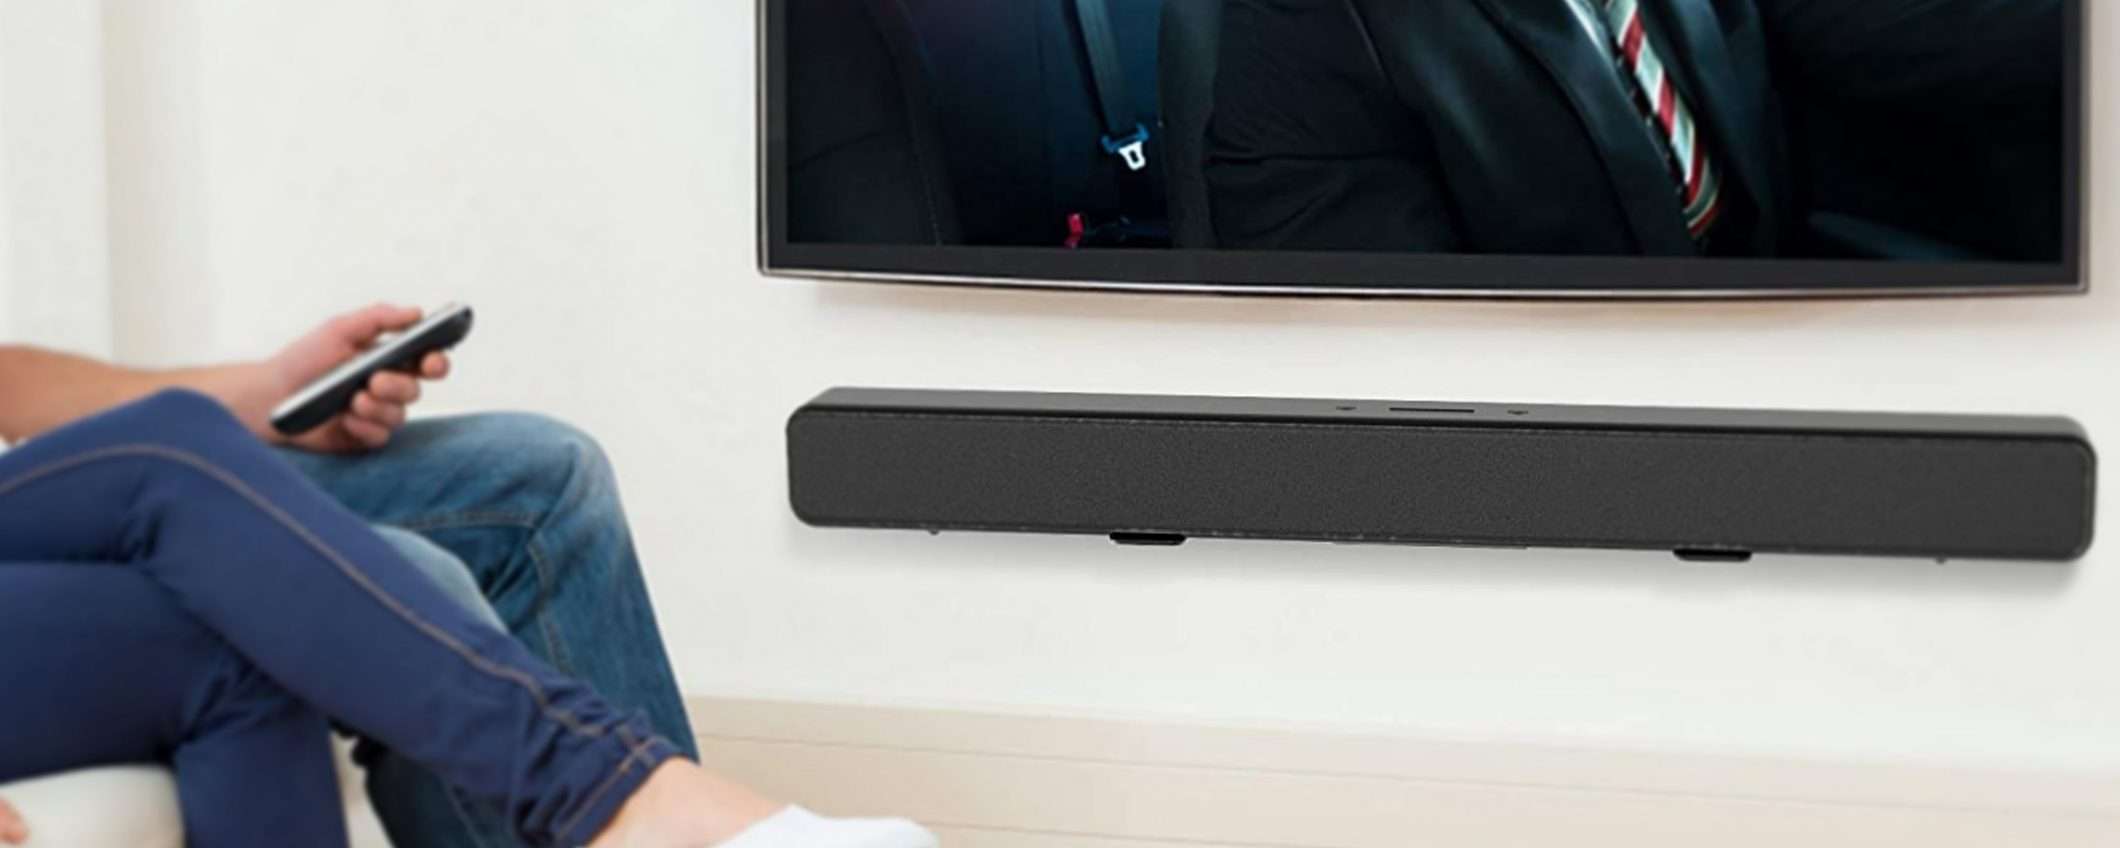 Smart TV al muro: come appendere la soundbar?